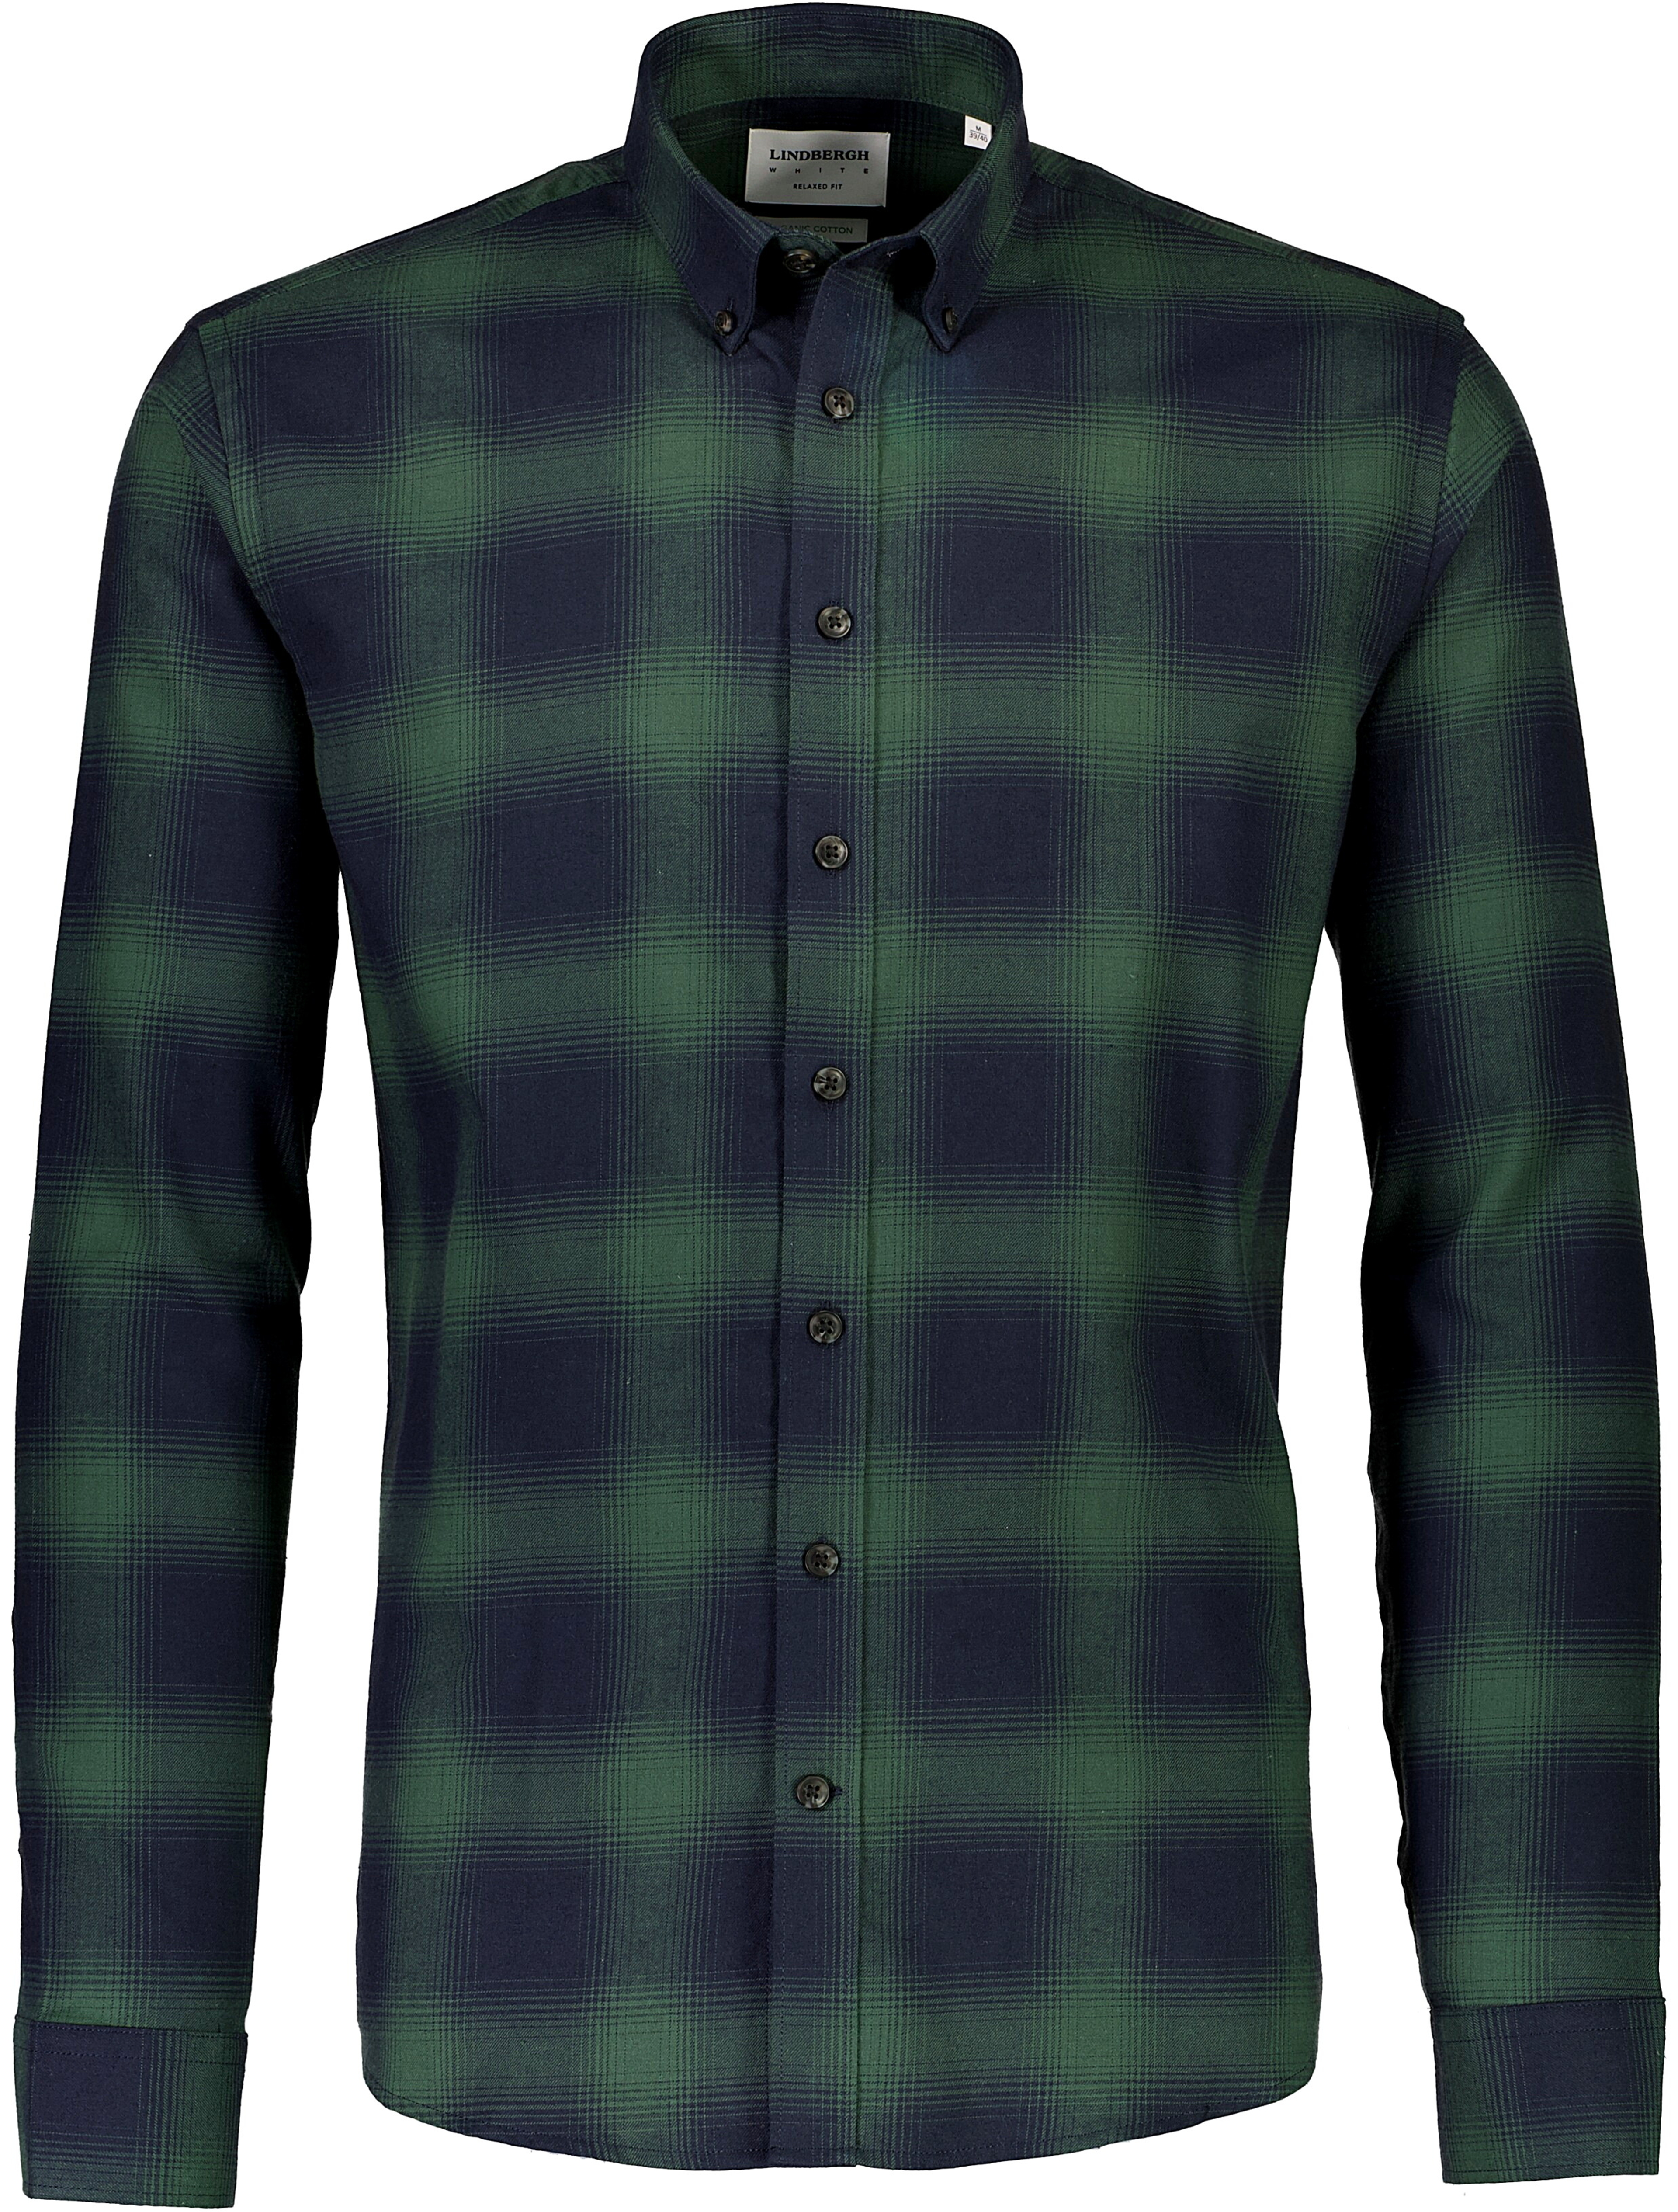 Lindbergh Flannel shirt green / green